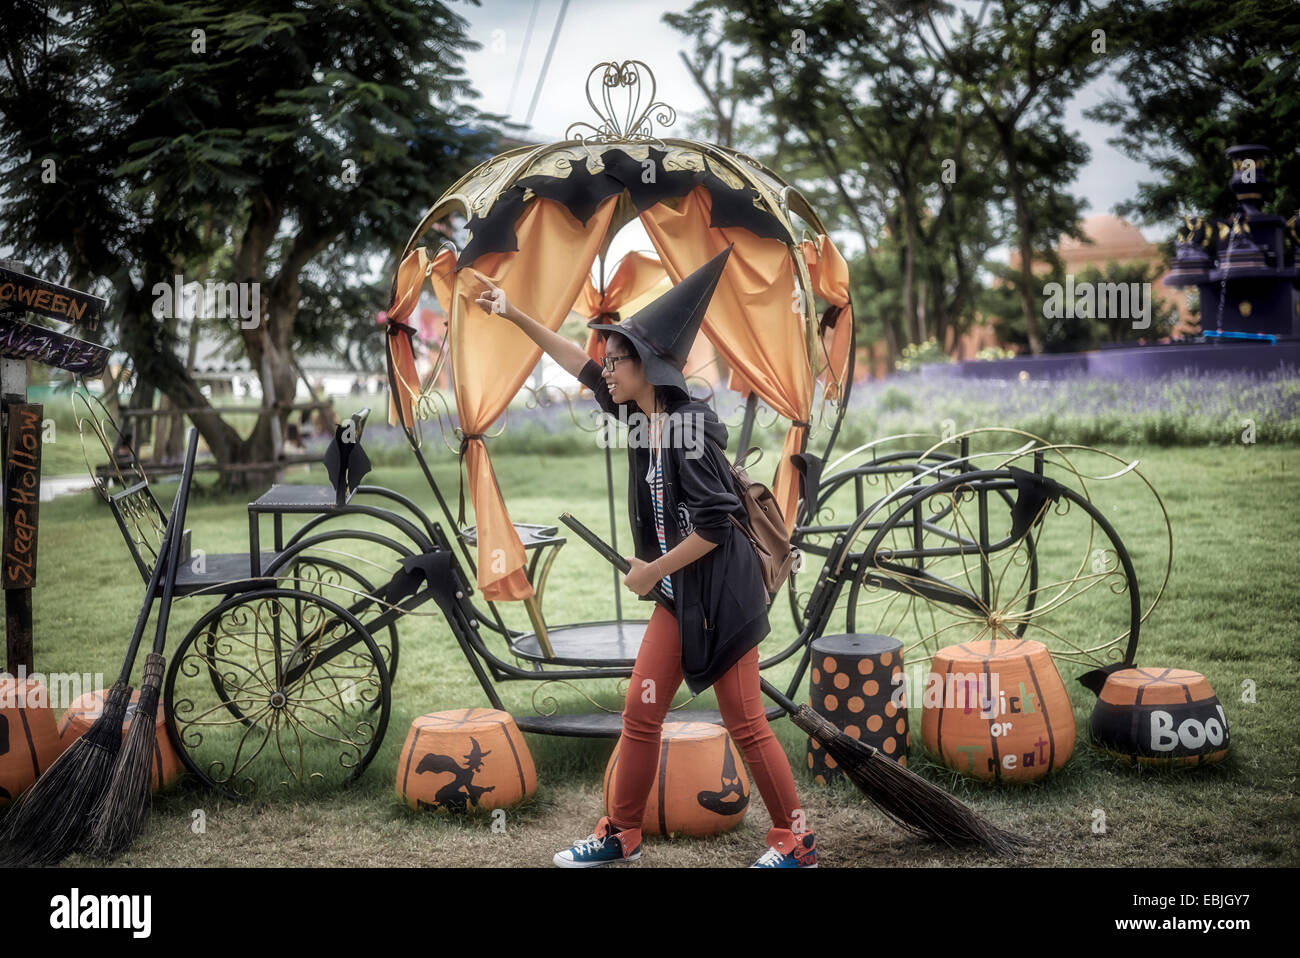 Sorcière Halloween. Image humoristique d'une jeune fille contre un ensemble d'Halloween avec un balai de sorcières et un chapeau conique Banque D'Images